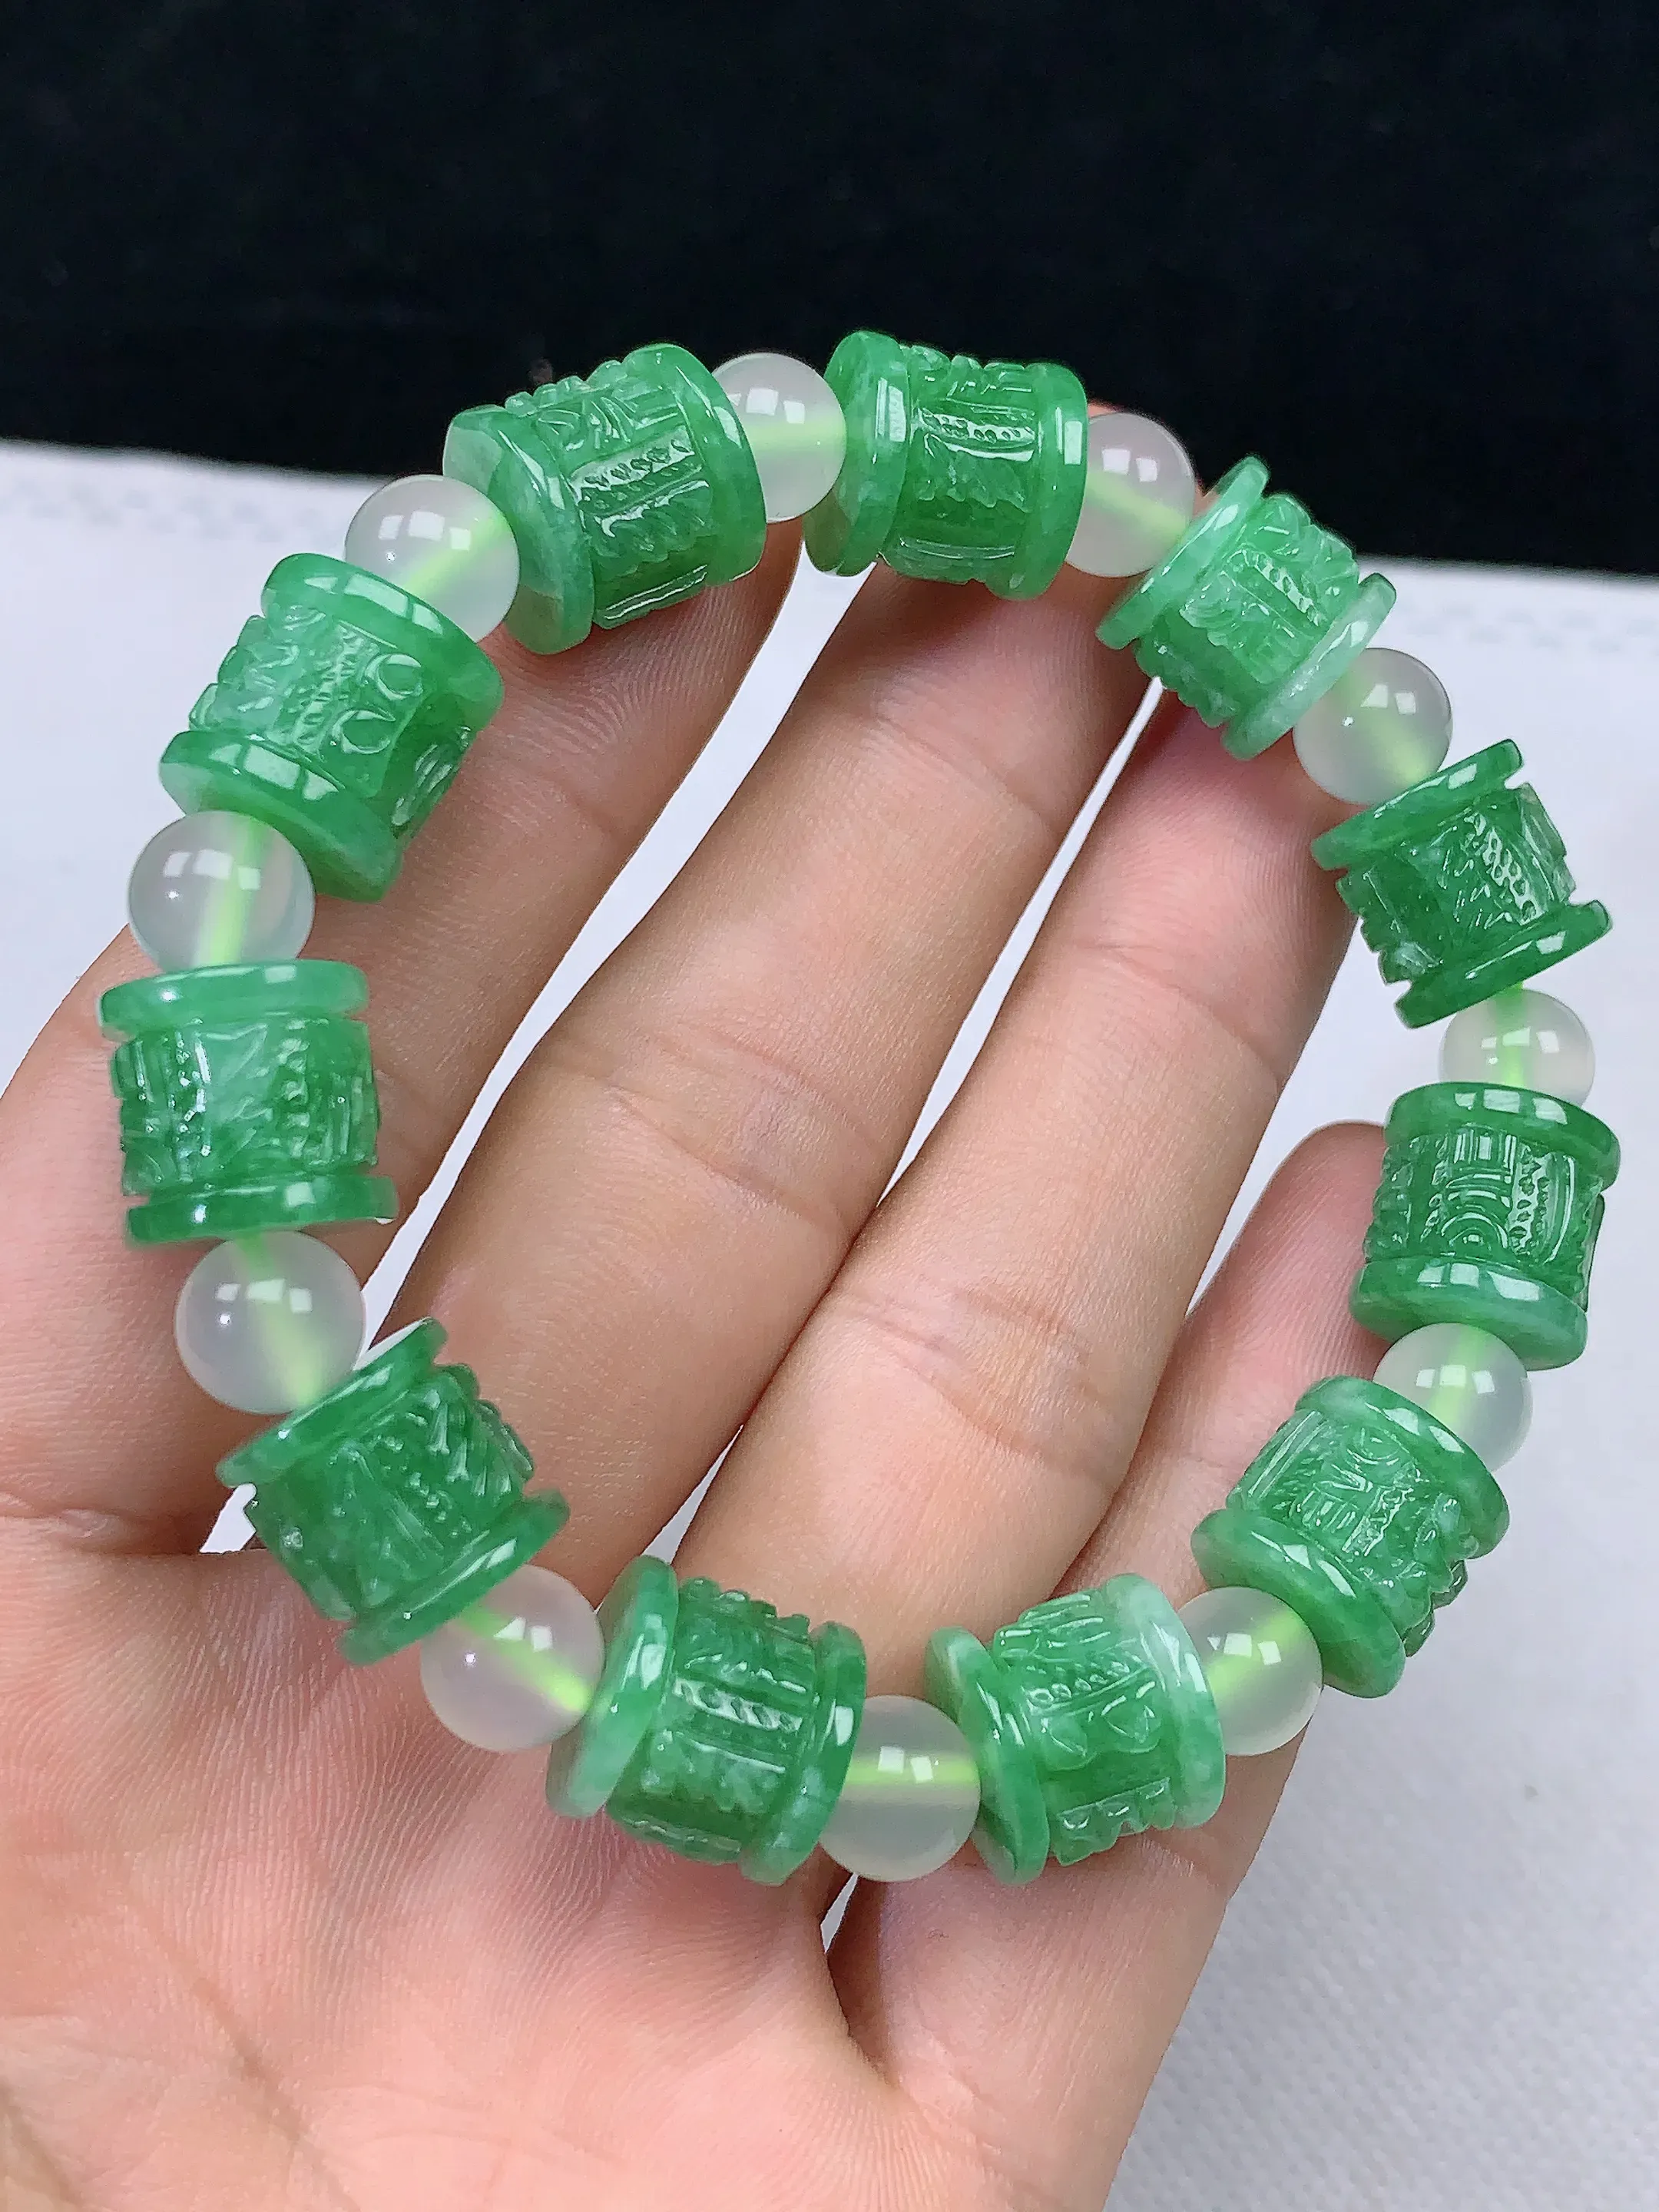 缅甸天然A货翡翠冰润满绿手串手链 整体尺寸:12/12/11.3mm